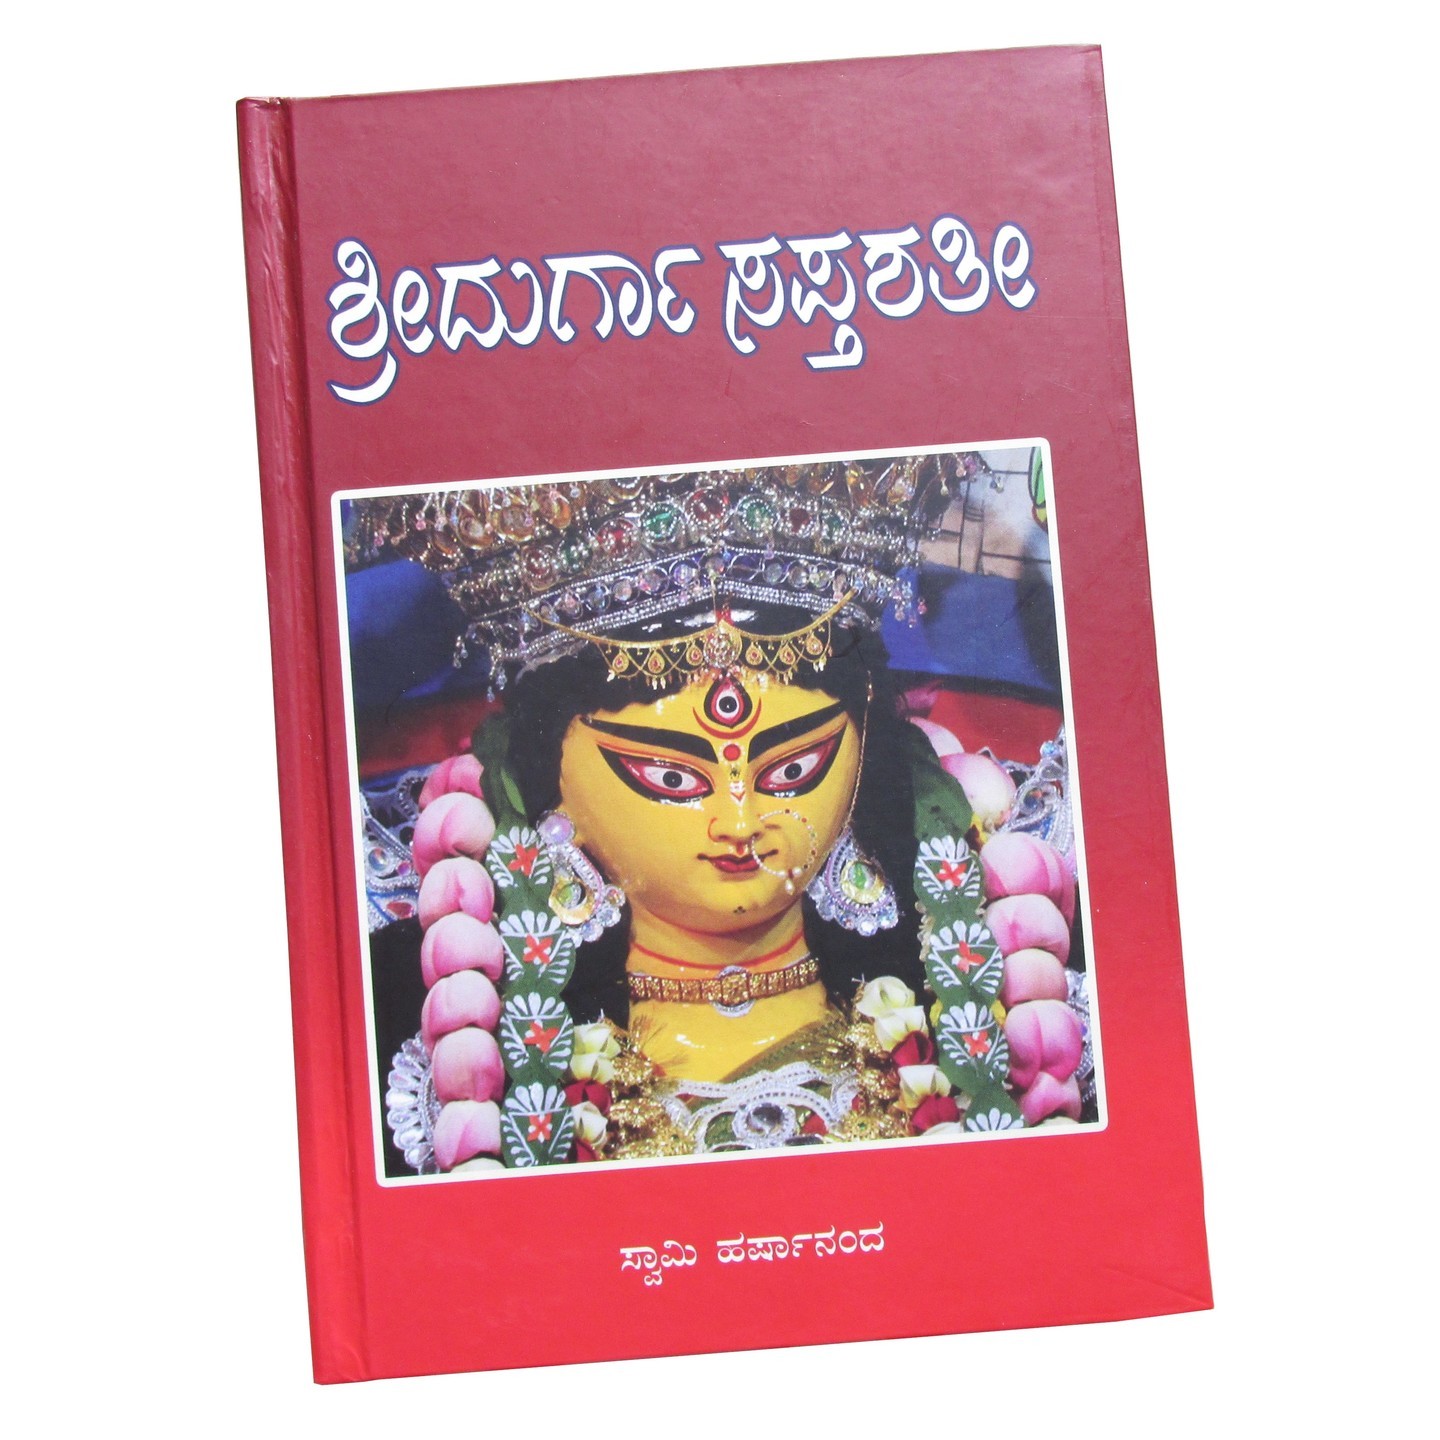 ಶ್ರೀ ದುರ್ಗಾಸಪ್ತಶತೀ ಭಾವಾರ್ಥ ಸಹಿತ (Sri Durgasaptashati) by Ramakrishna Ashram